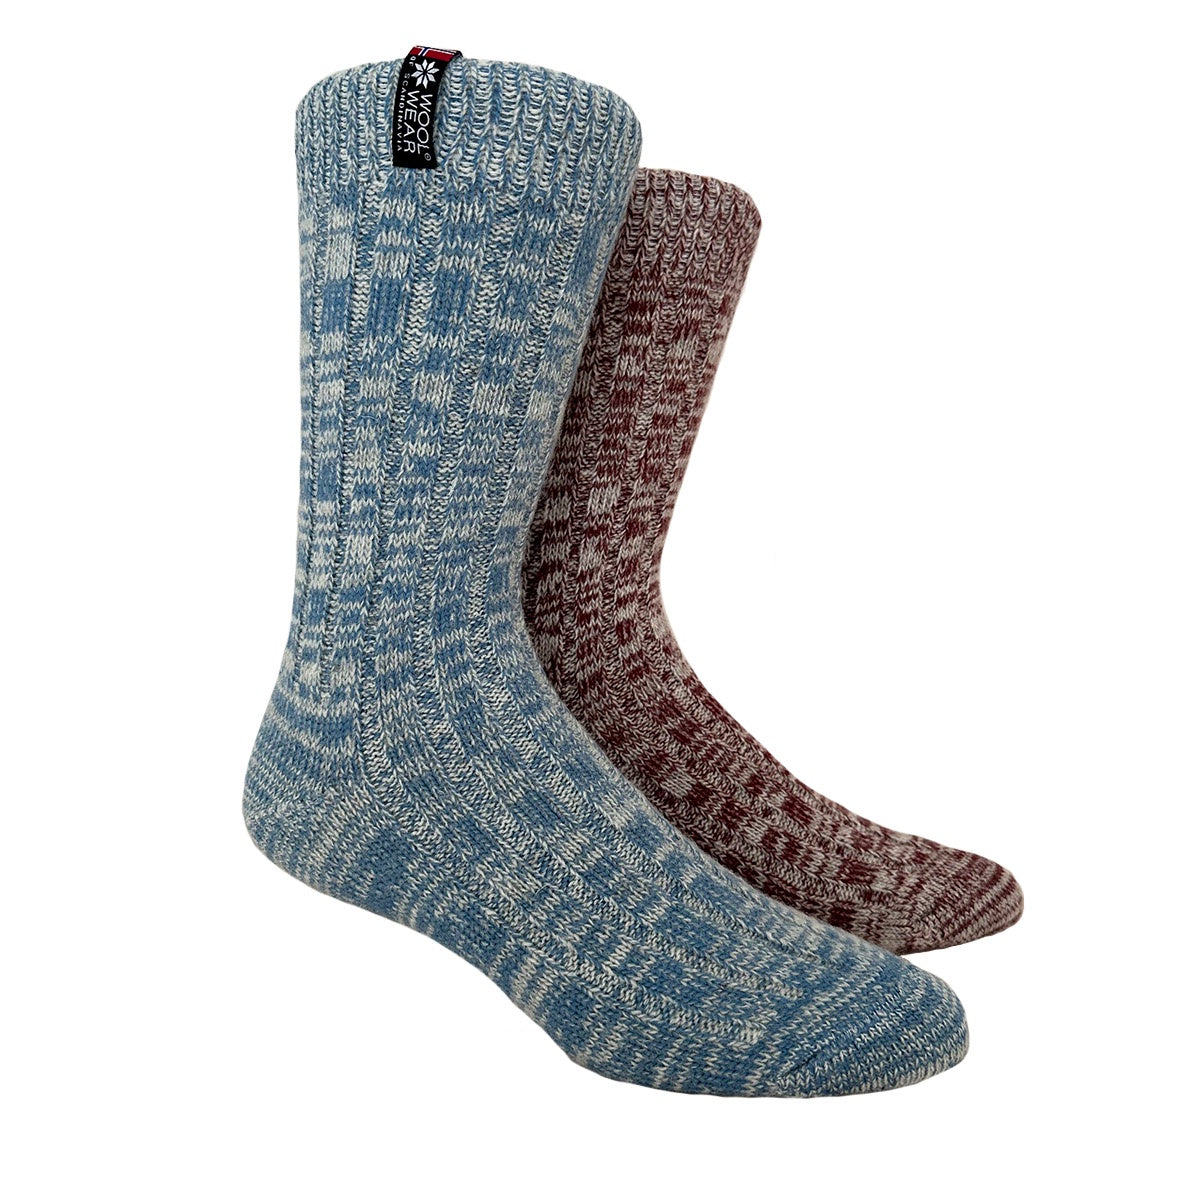 Womens Denmark Wool Socks 2-Pack Gift Box, Light Blue-Burgundy (8326026527007)